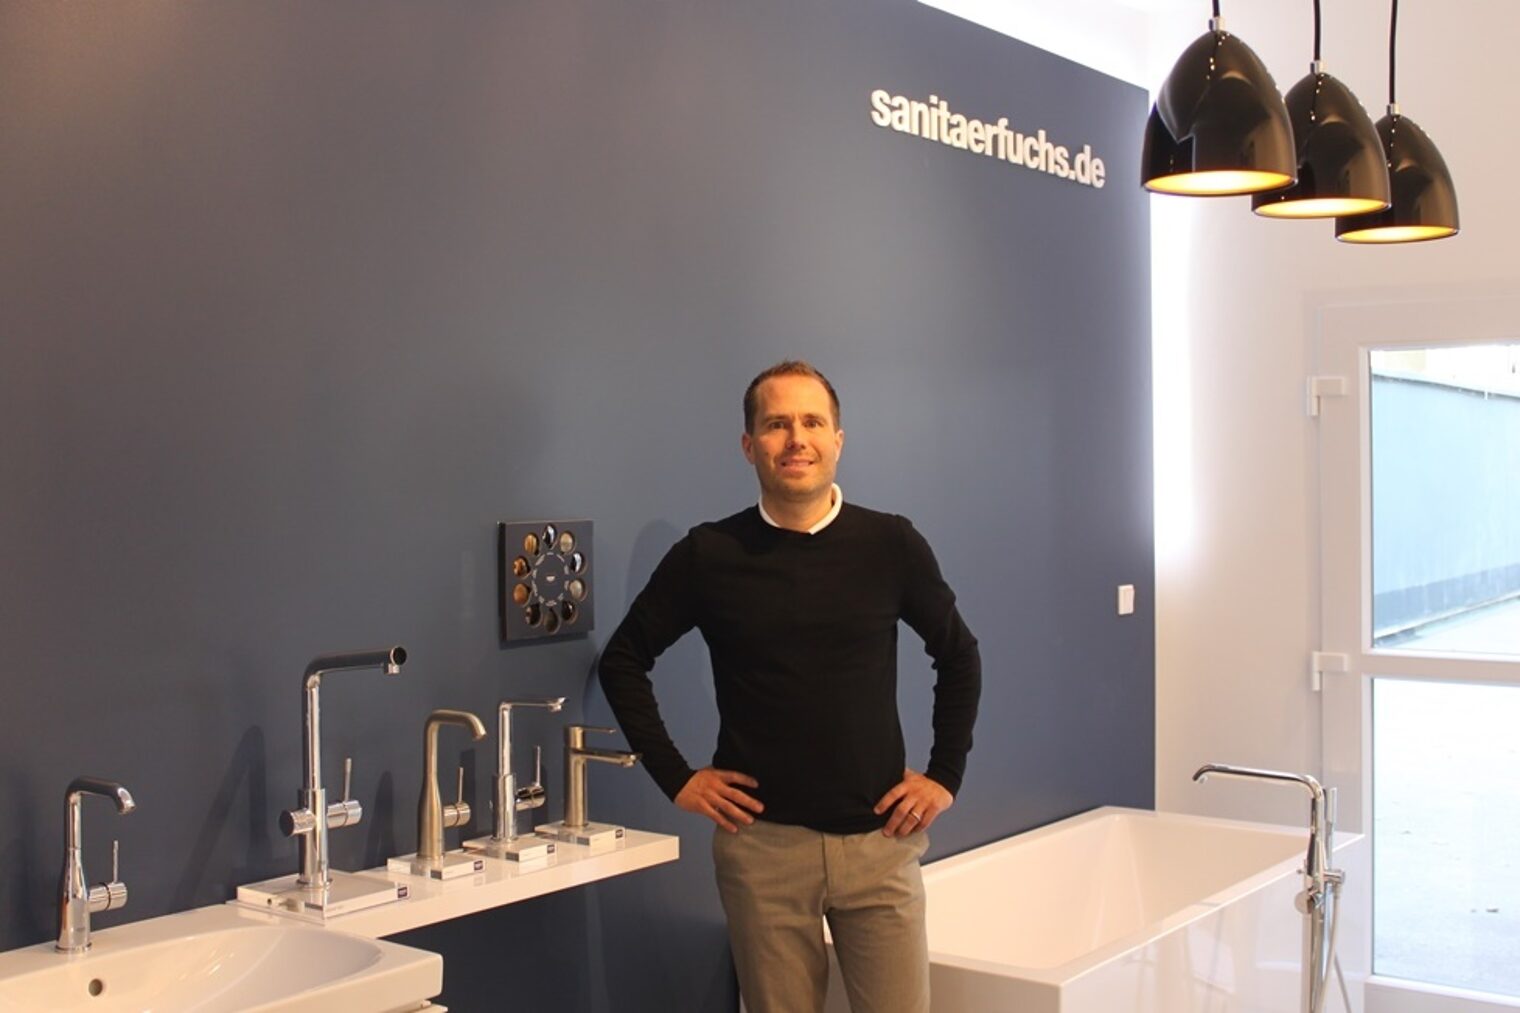 Geschäftsführer Fuchs in der neu gestalteten Badausstellung seines Sanitär- und Heizungsunternehmens